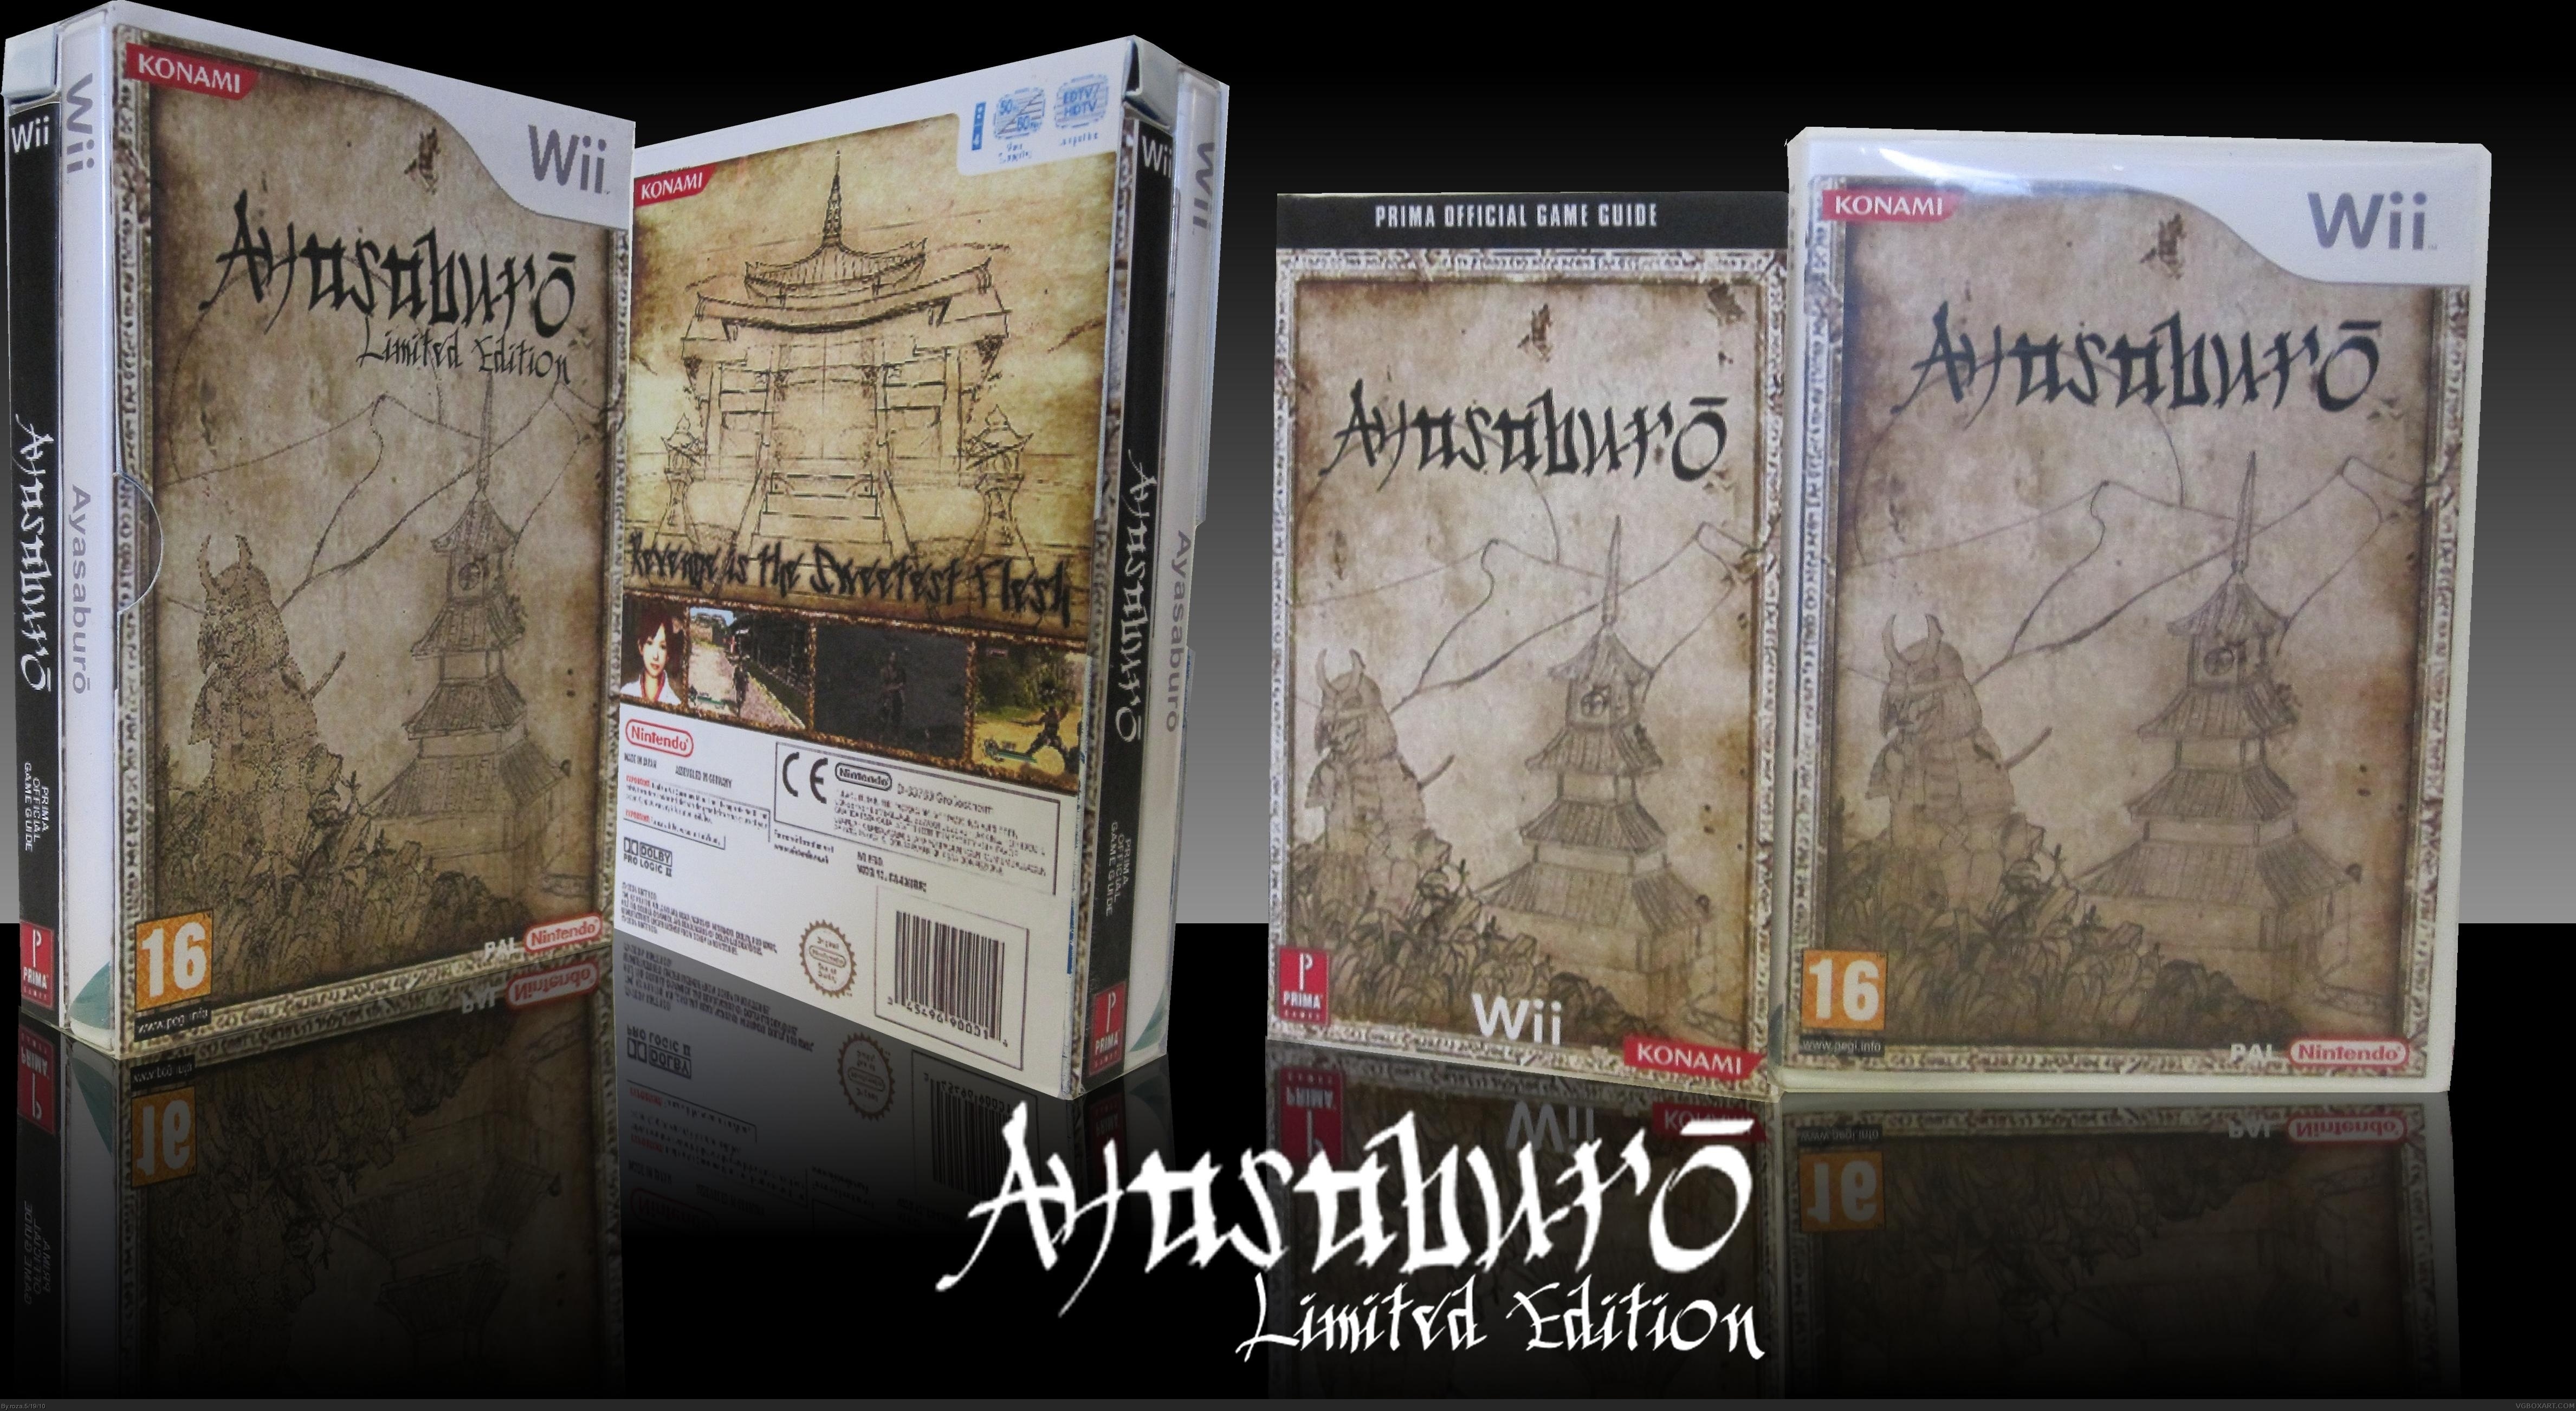 Ayasaburo Limited Edition box cover